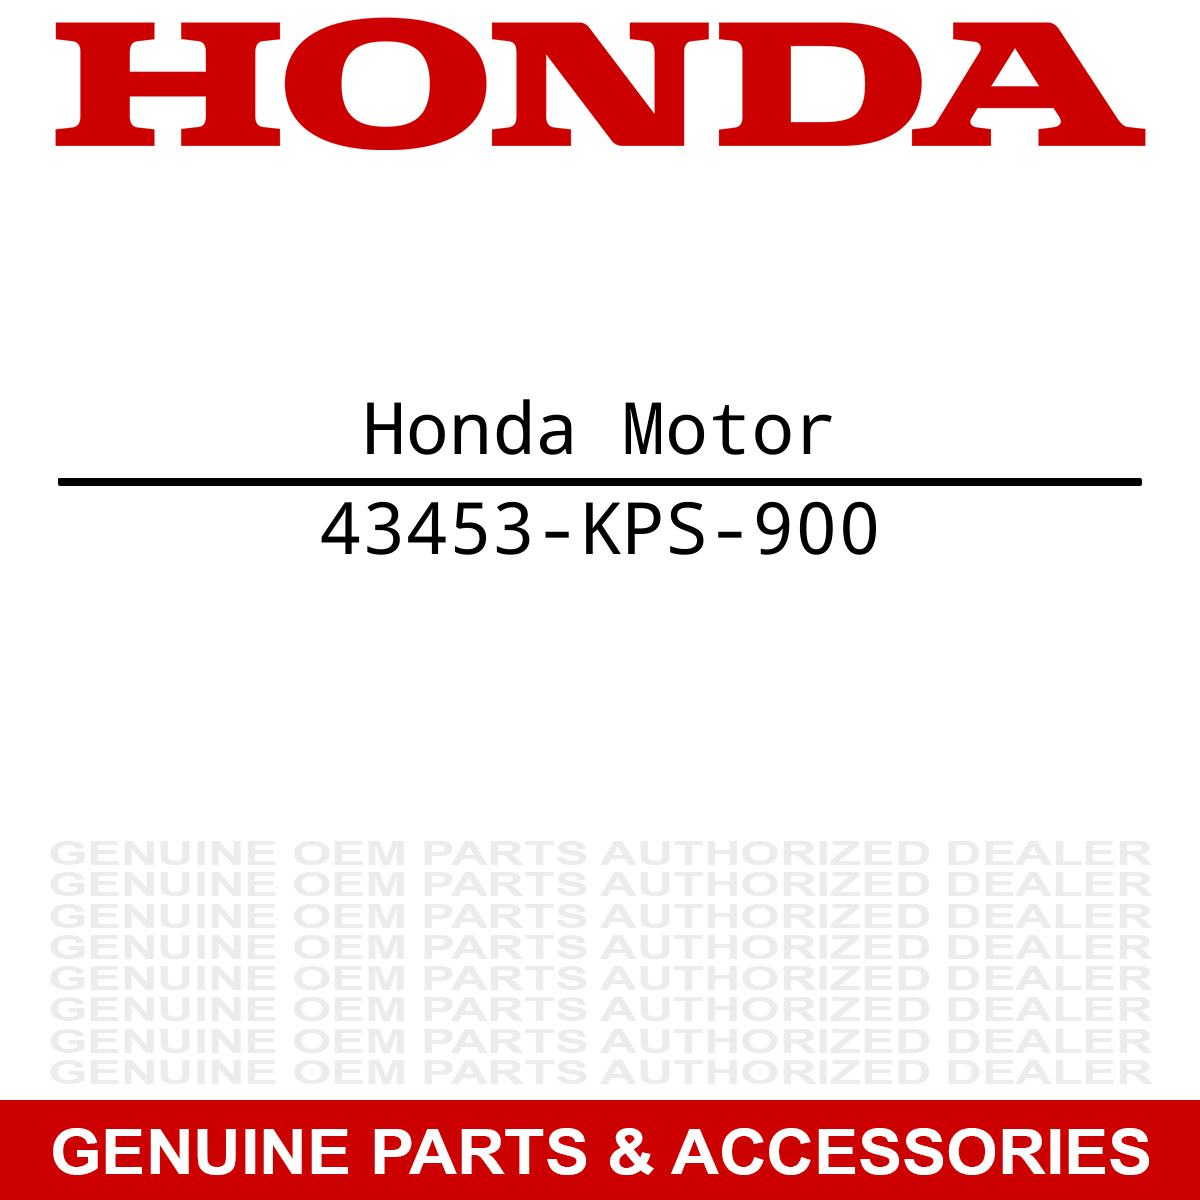 Honda 43453-KPS-900 Pin CRF230F CRF150F CRF150F CRF230F CRF230F
Honda